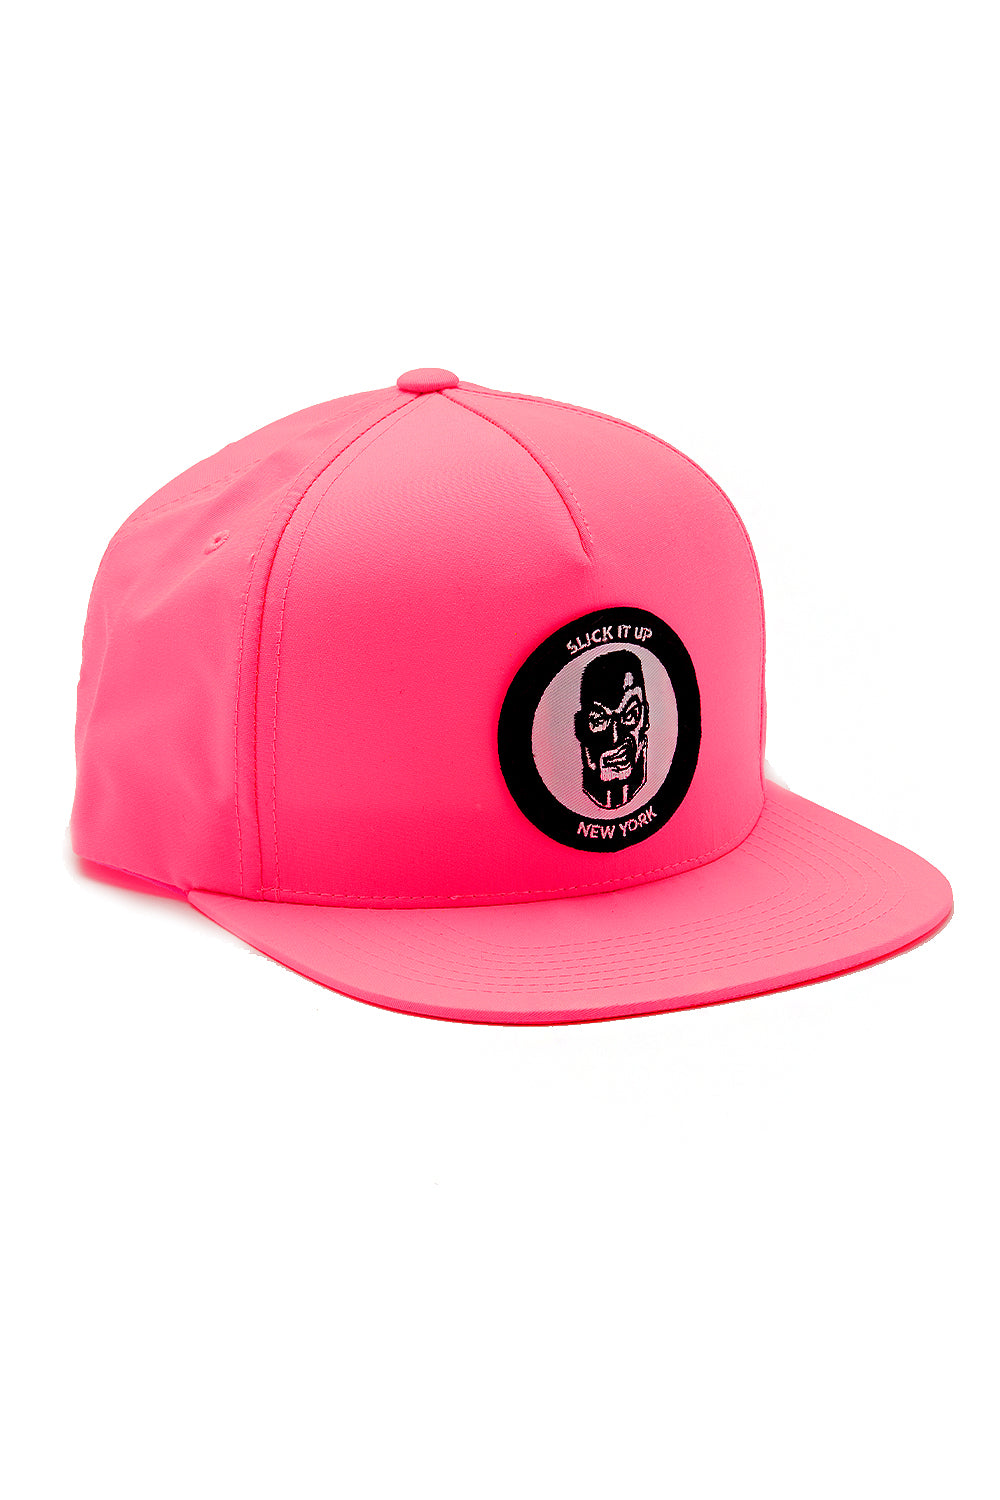 Neon Pink Logo Snap Back Hat - Slick It Up 